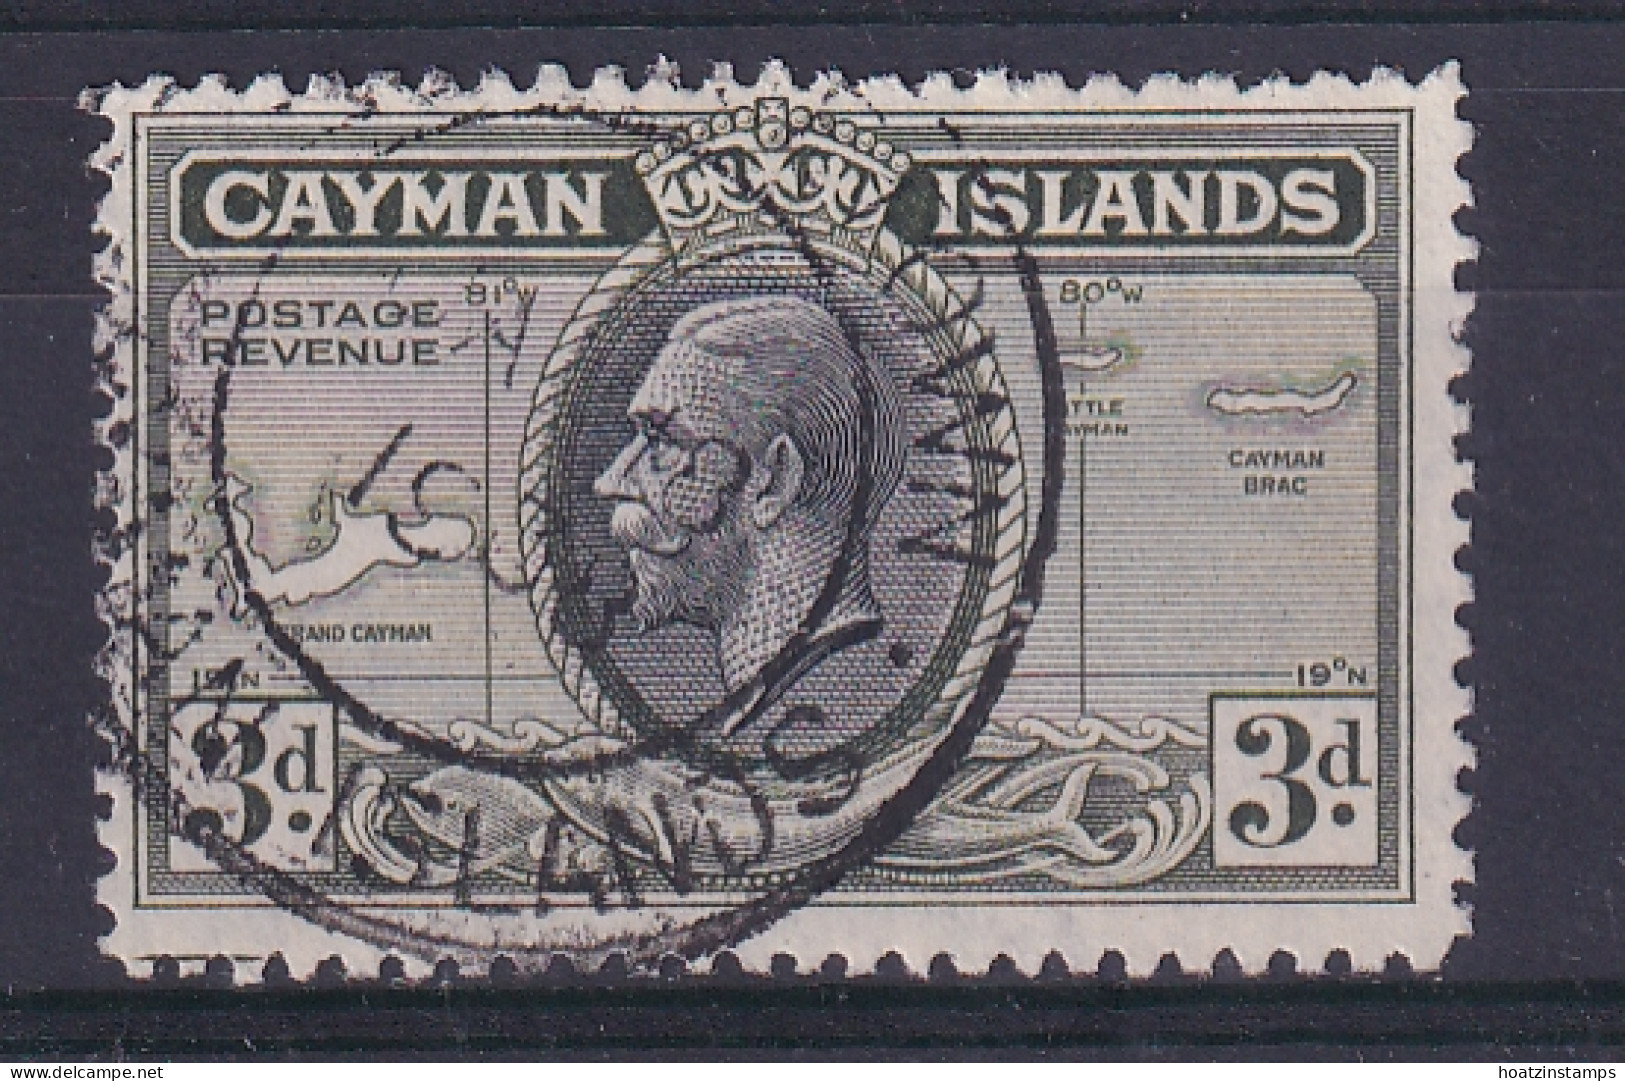 Cayman Islands: 1935   KGV - Pictorial   SG102   3d    Used - Caimán (Islas)